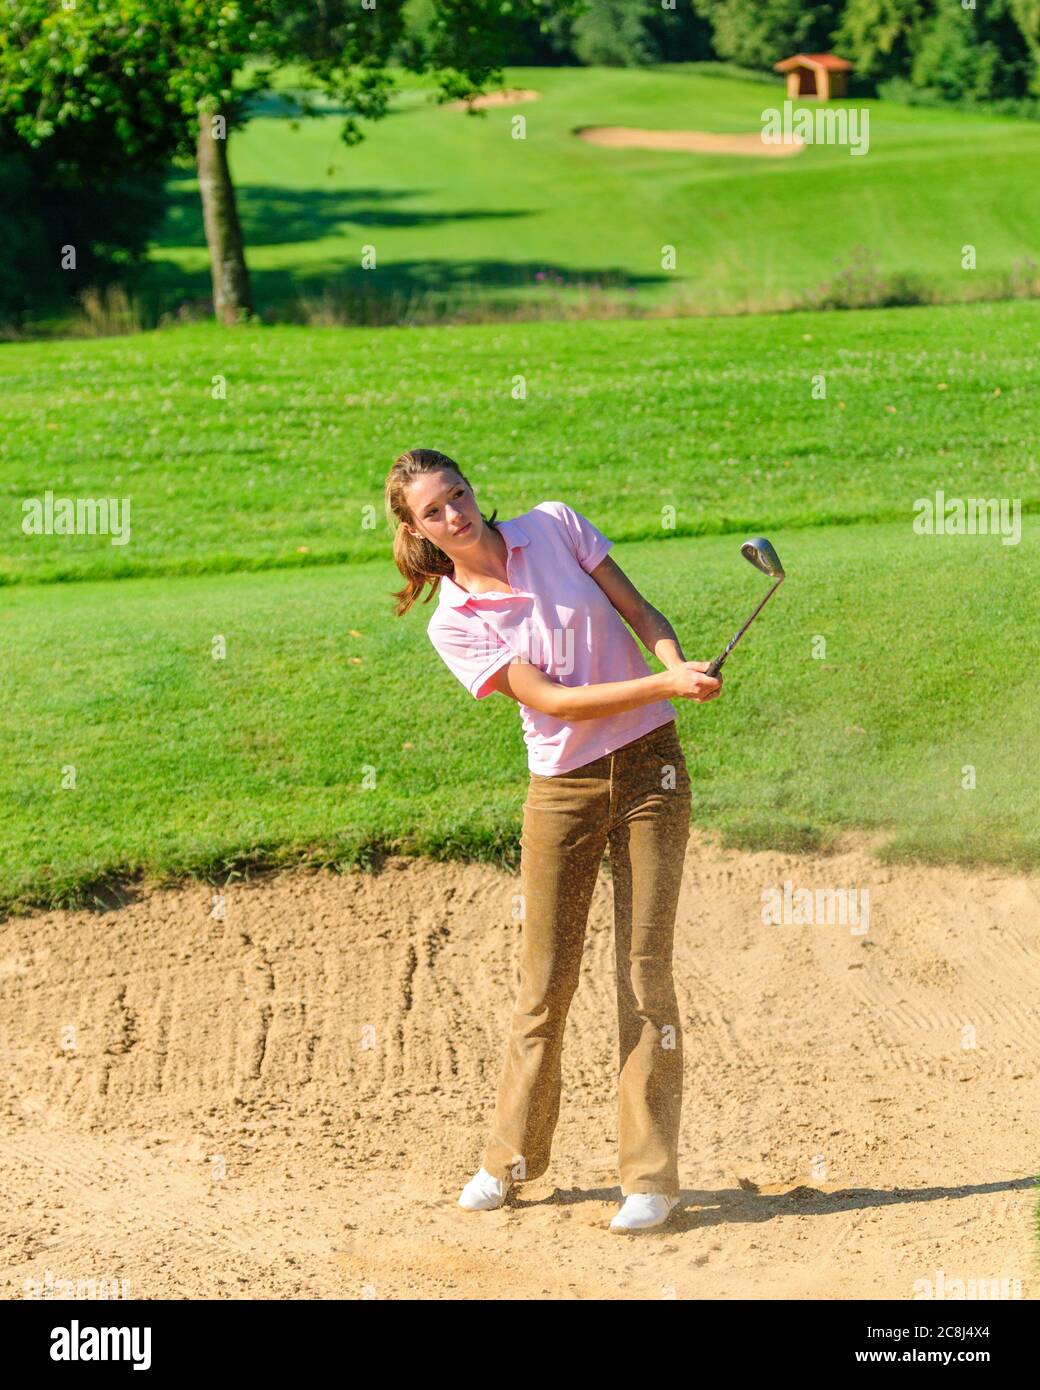 Jeune joueuse de golf jouant au ballon dans un bunker de sable Banque D'Images